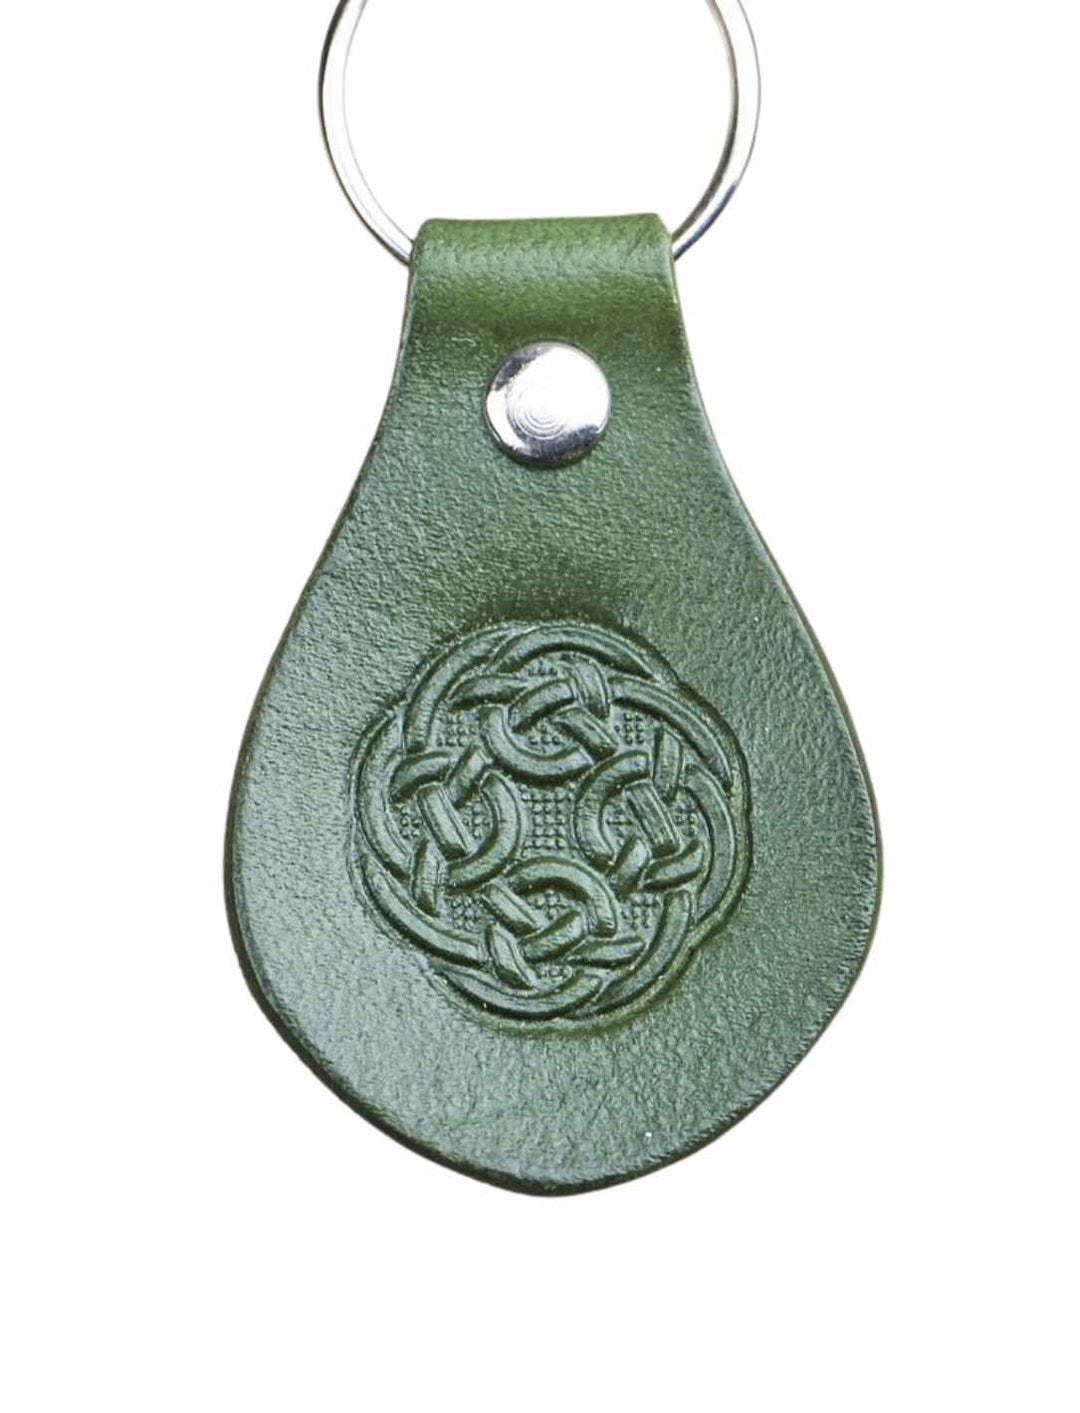 Echtleder-Schlüsselanhänger 'Celtic Infinity' mit keltischem Knoten auf einem klaren Hintergrund – traditionelles irisches Handwerk, angeboten von Runental.de.